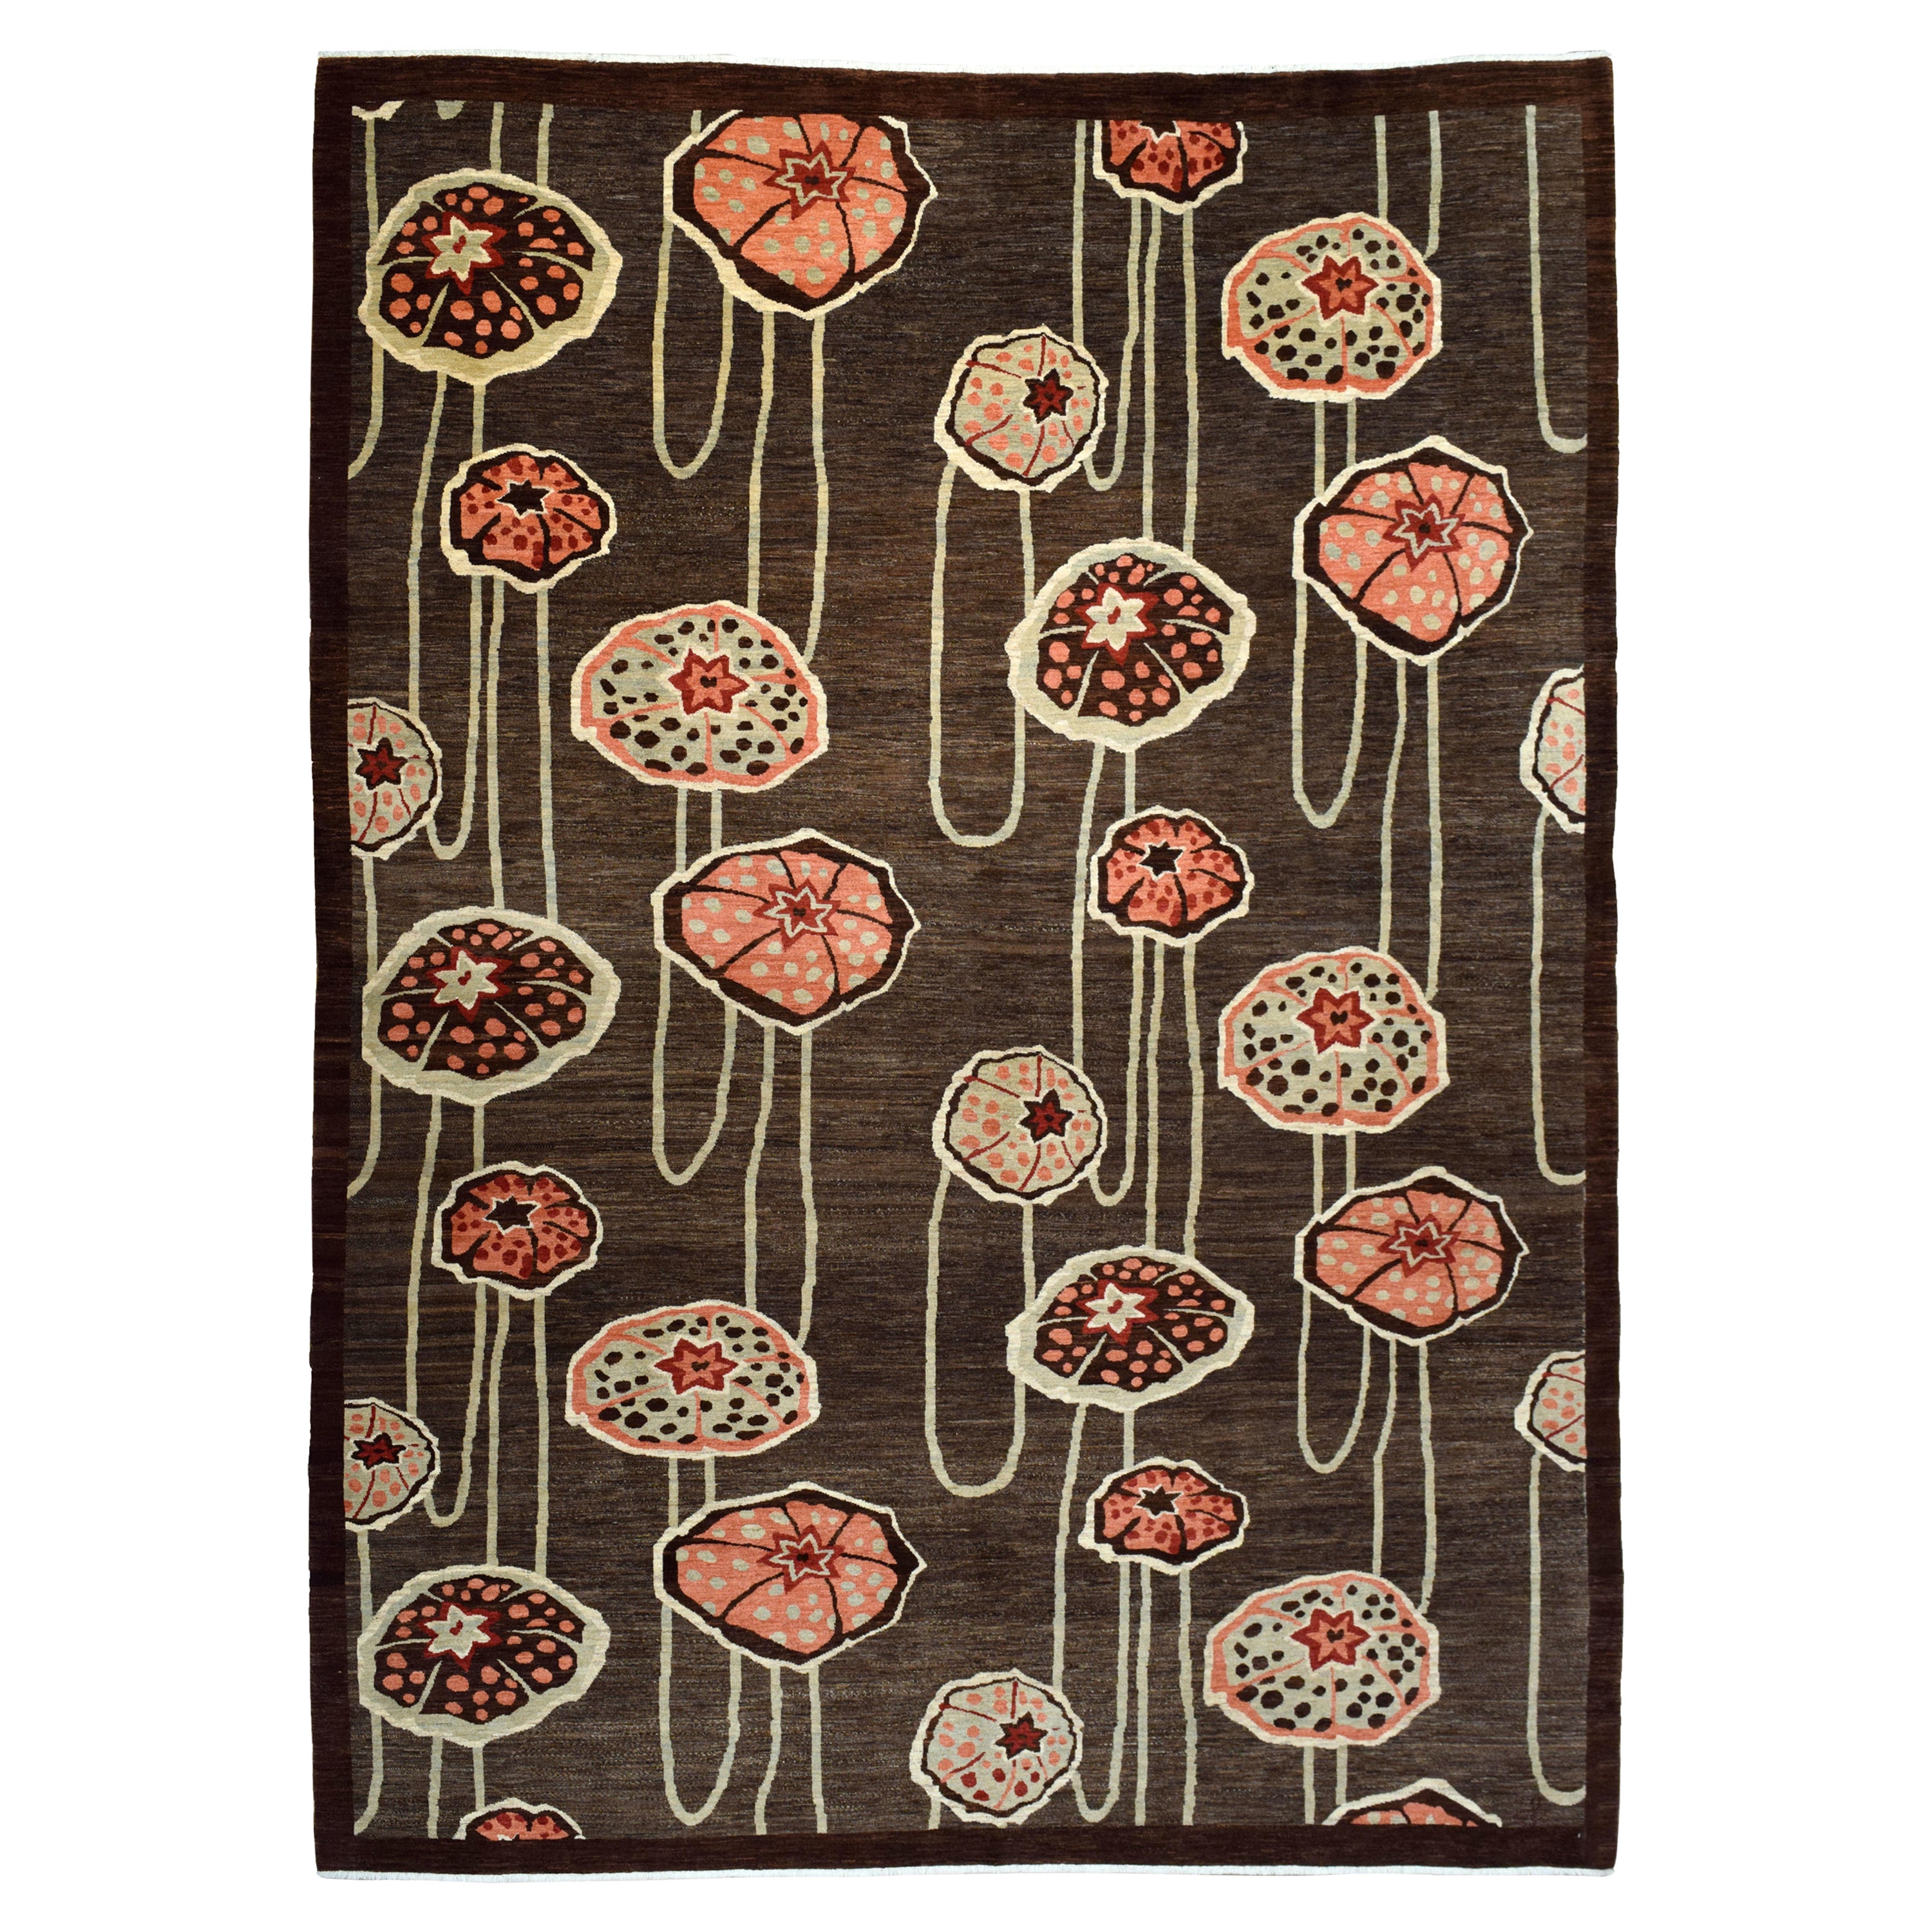 Orley Shabahang, tapis persan en laine de style Art déco, rose, vert, crème, Brown, 10' x 14'